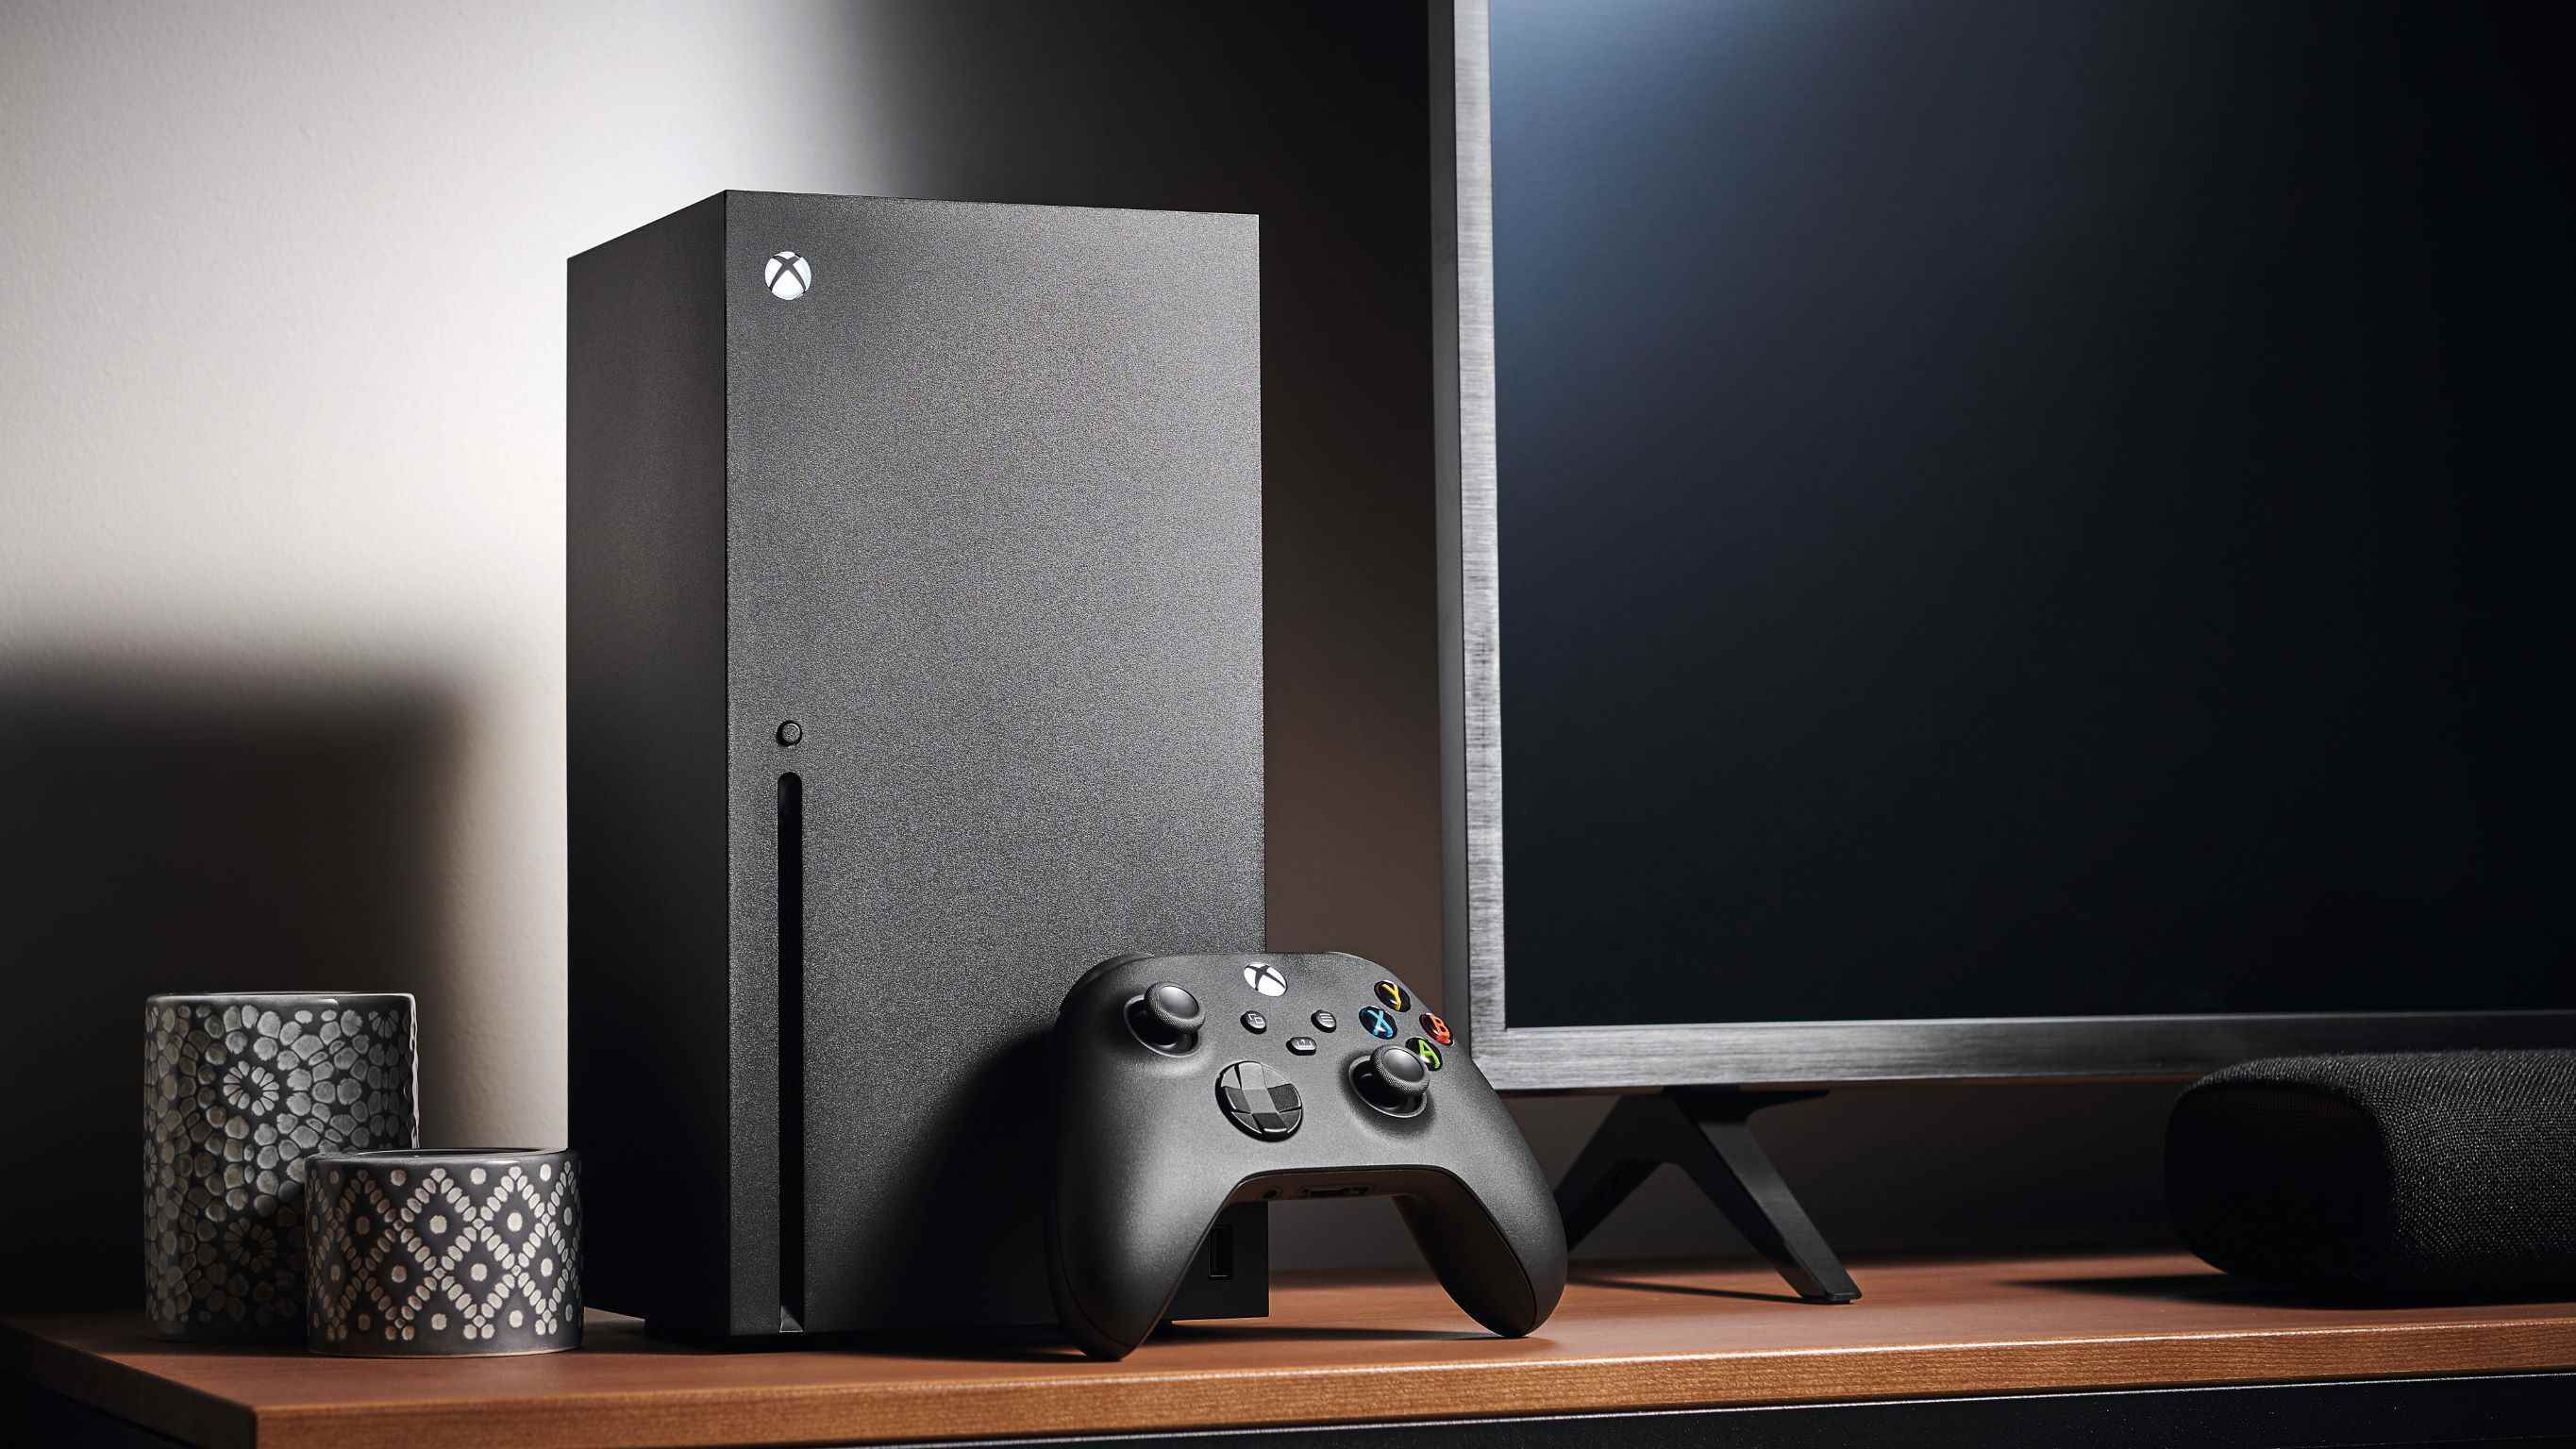 TV standında bir Xbox Series X ve bir Oyun Kumandası